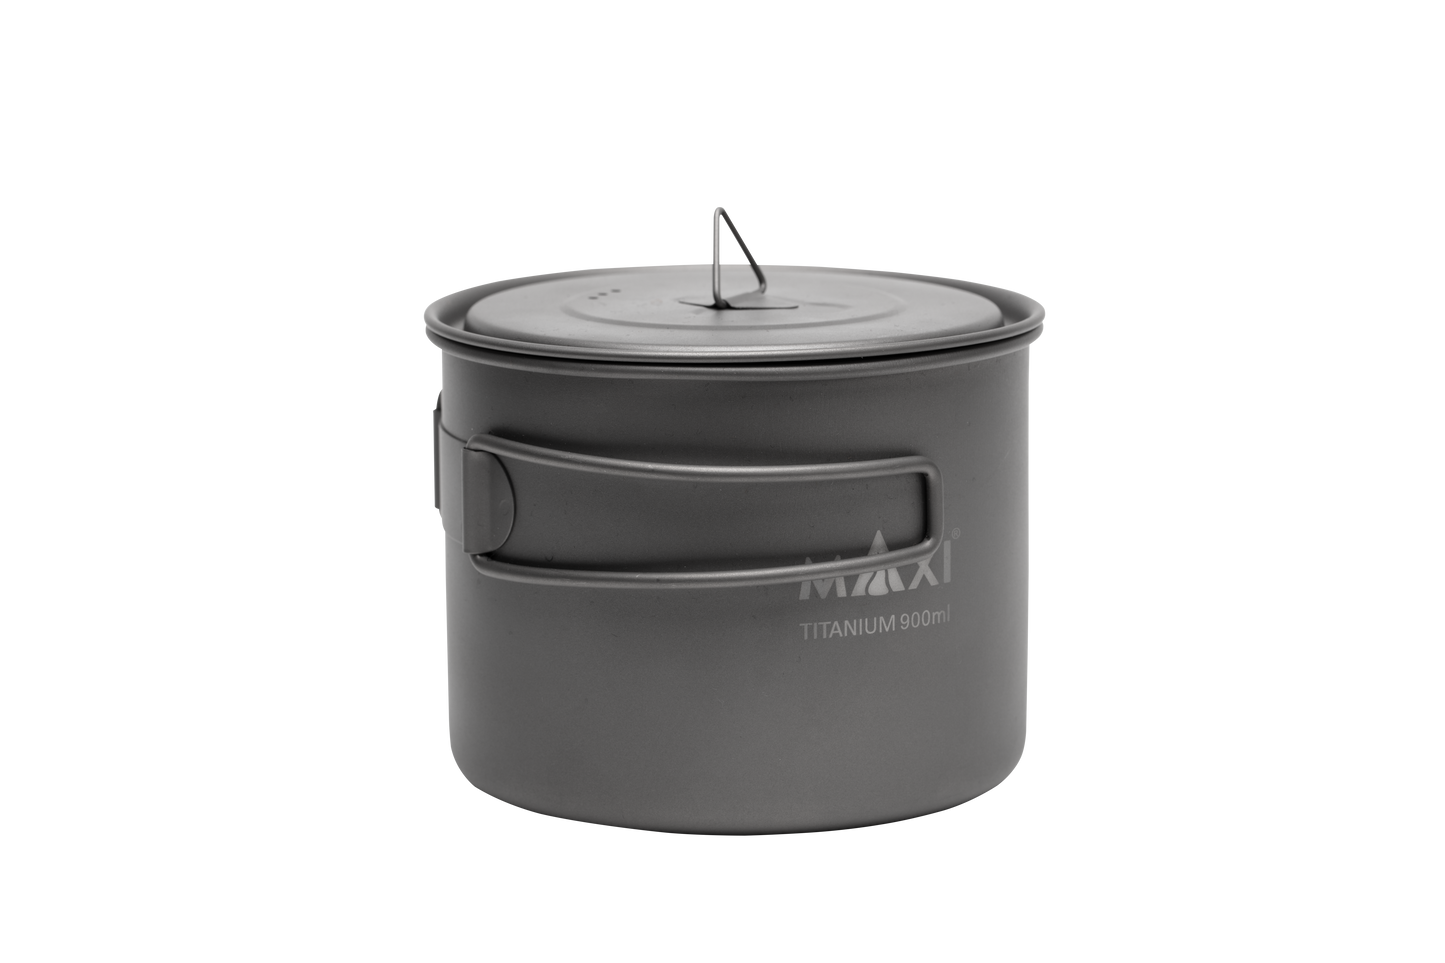 Titanium Pot-900ml